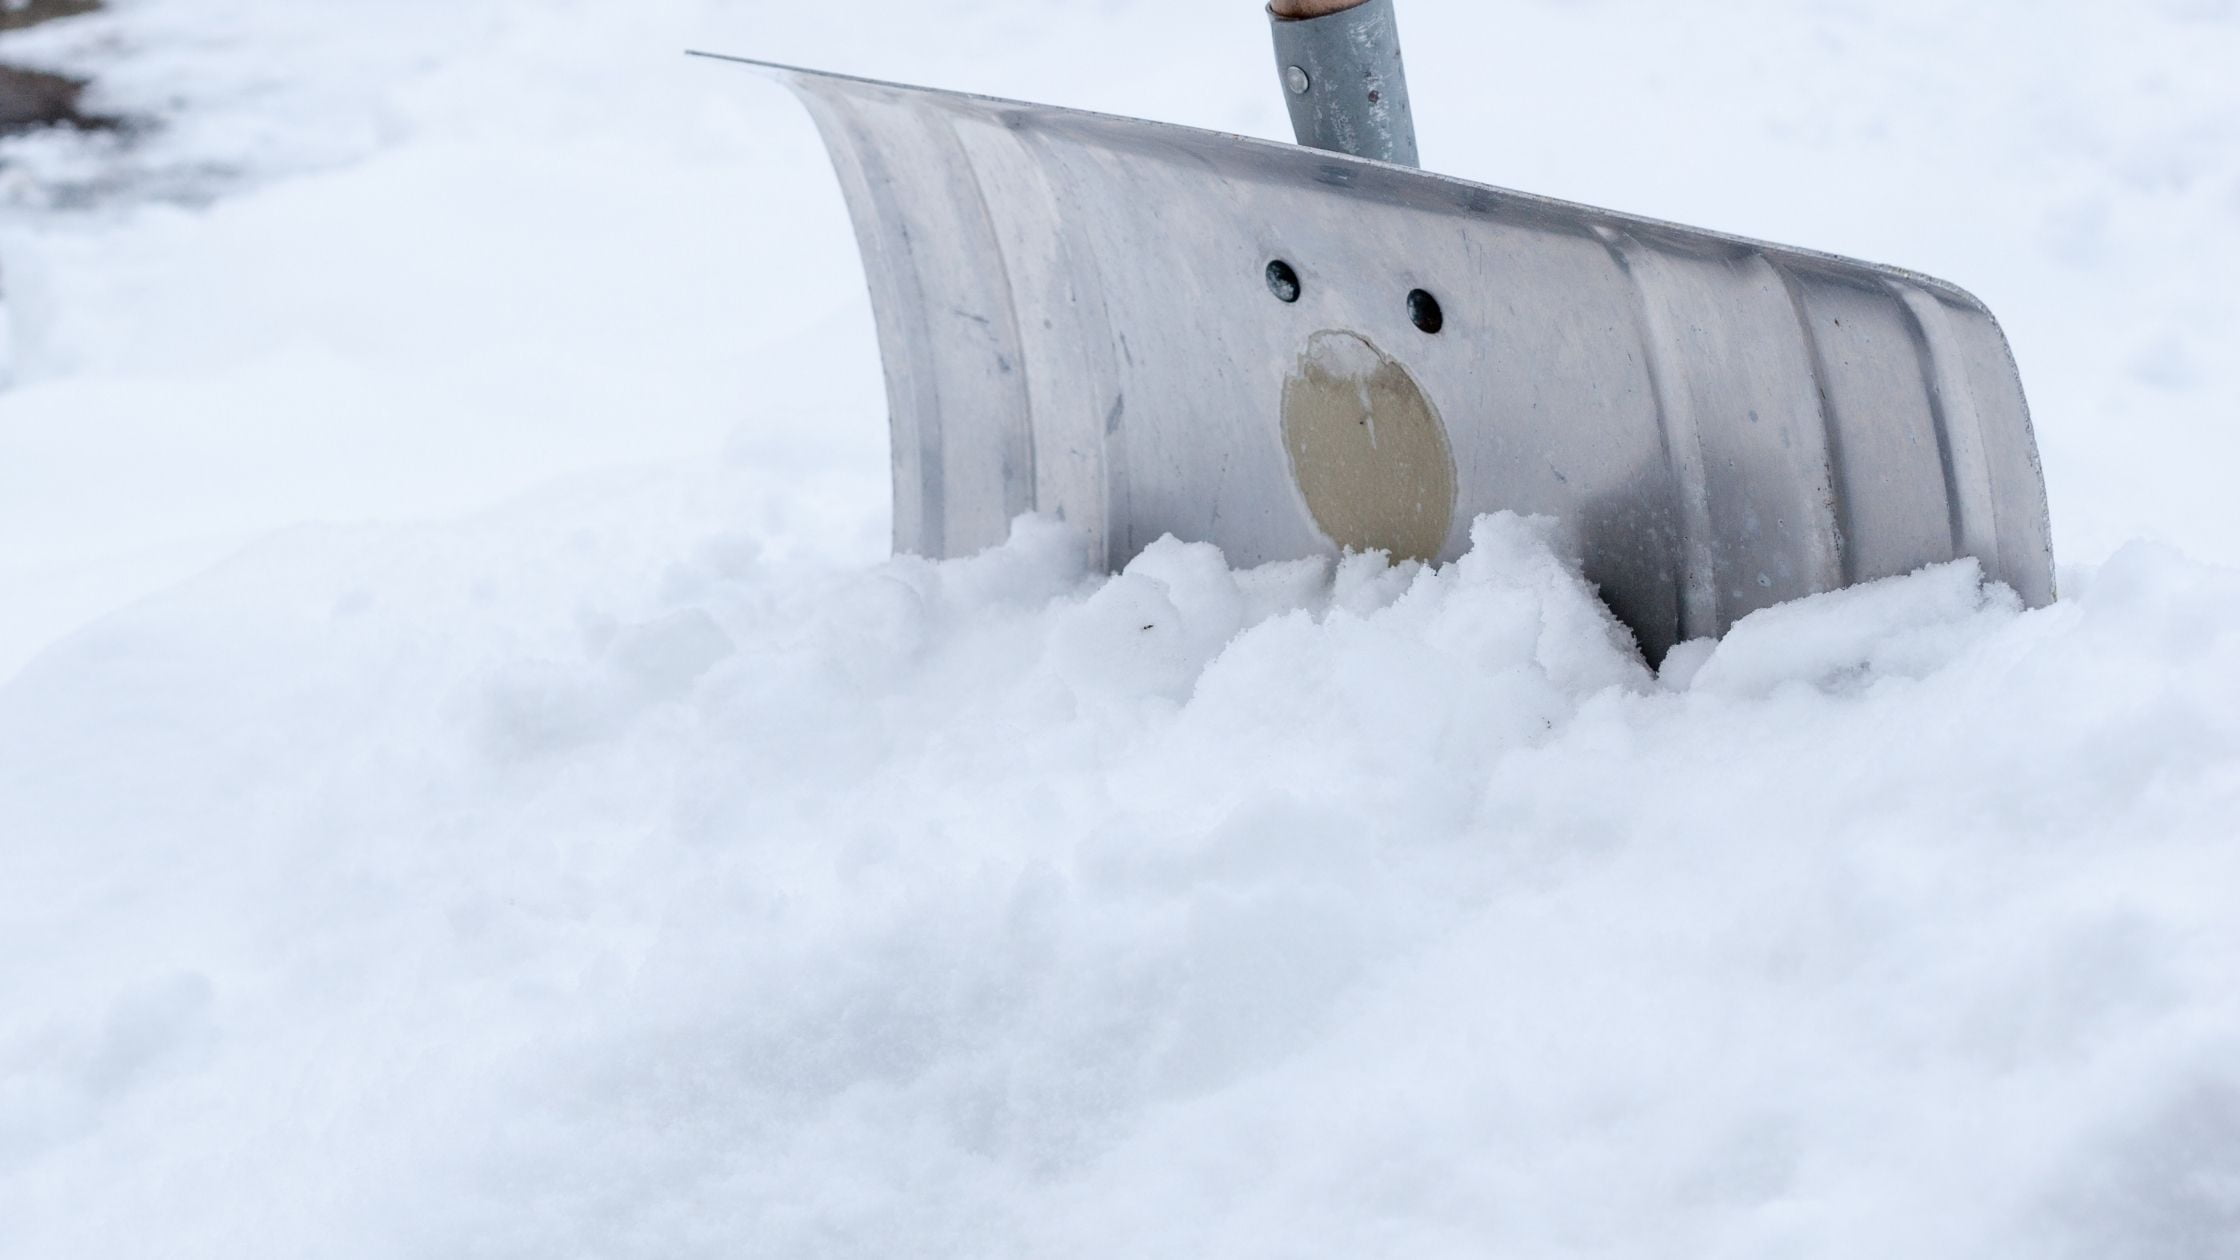 Types of shovels: snow shovel